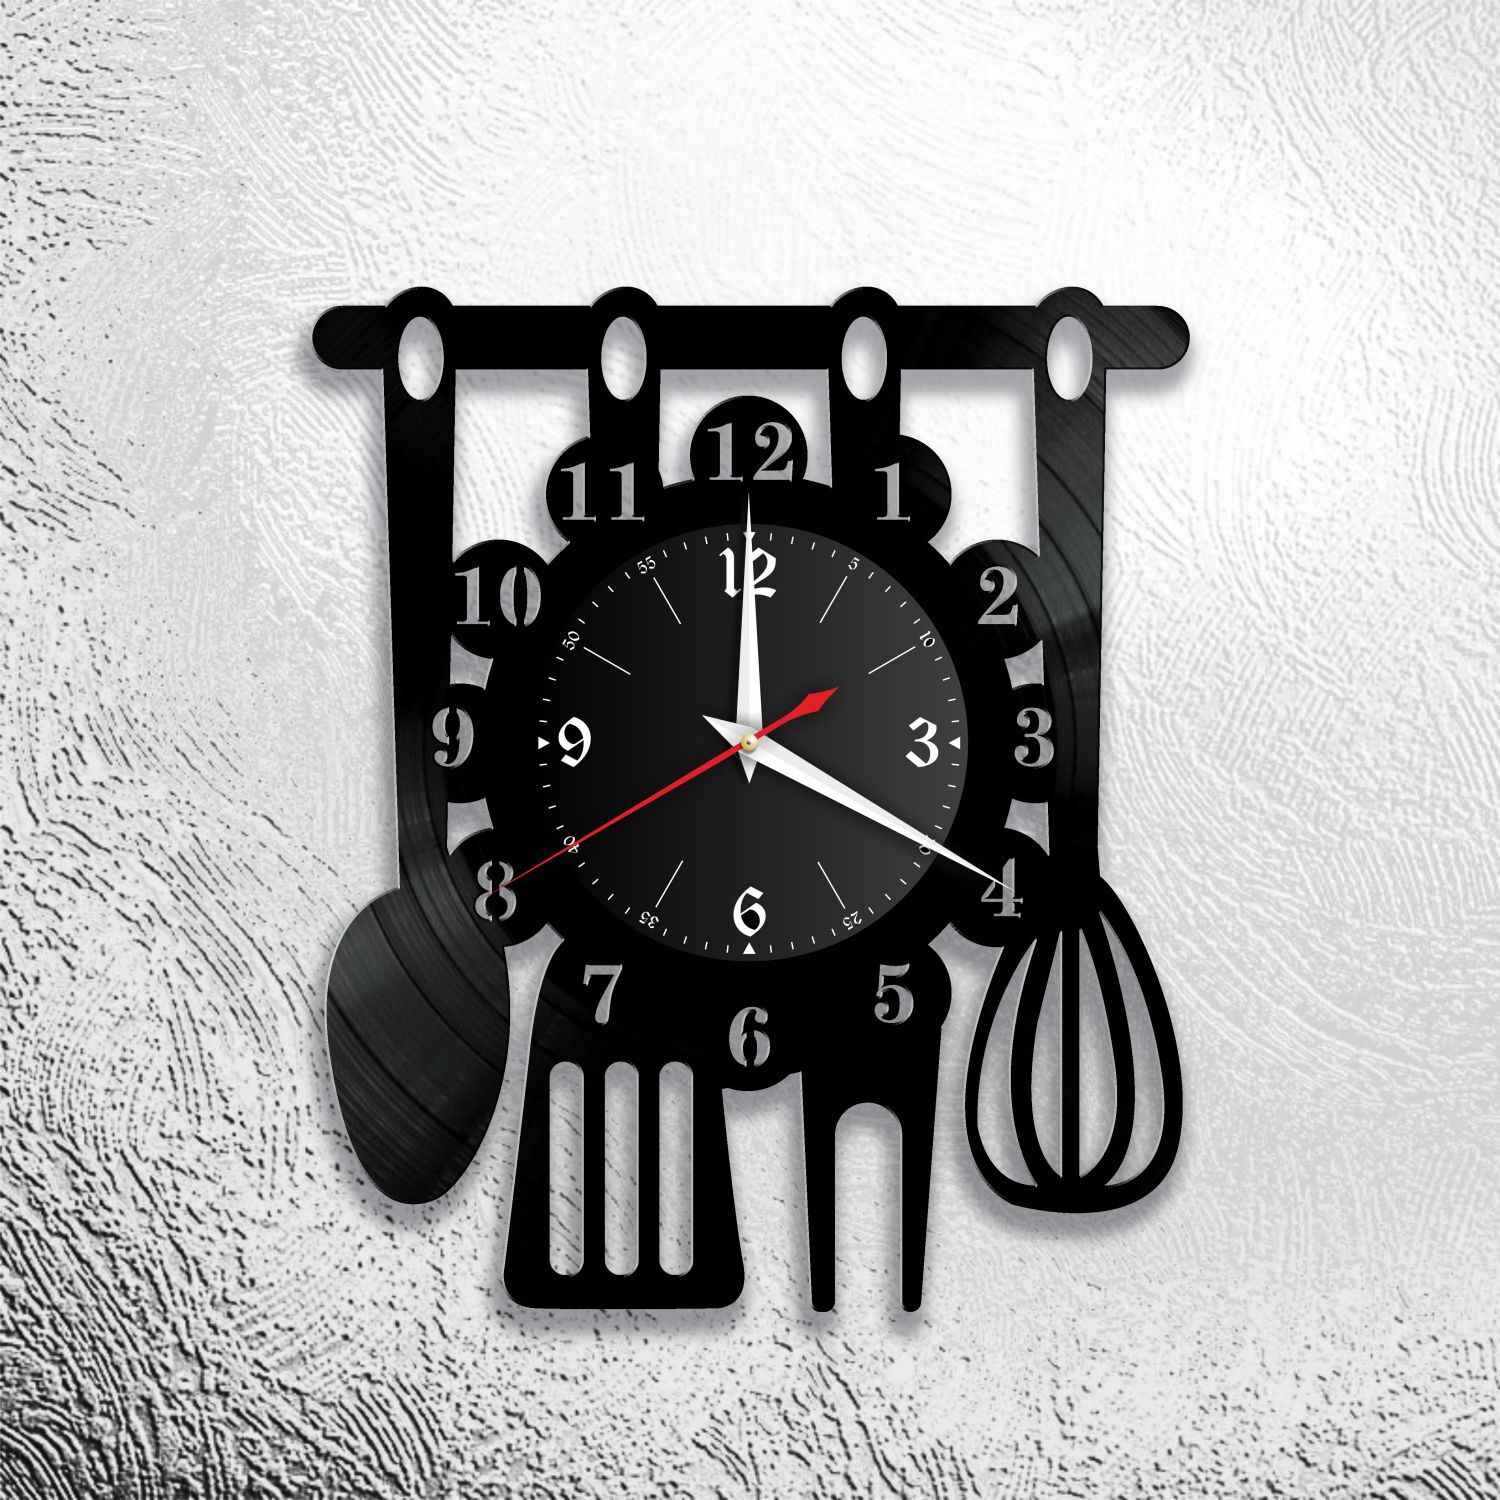 Оригинальные часы для кухни